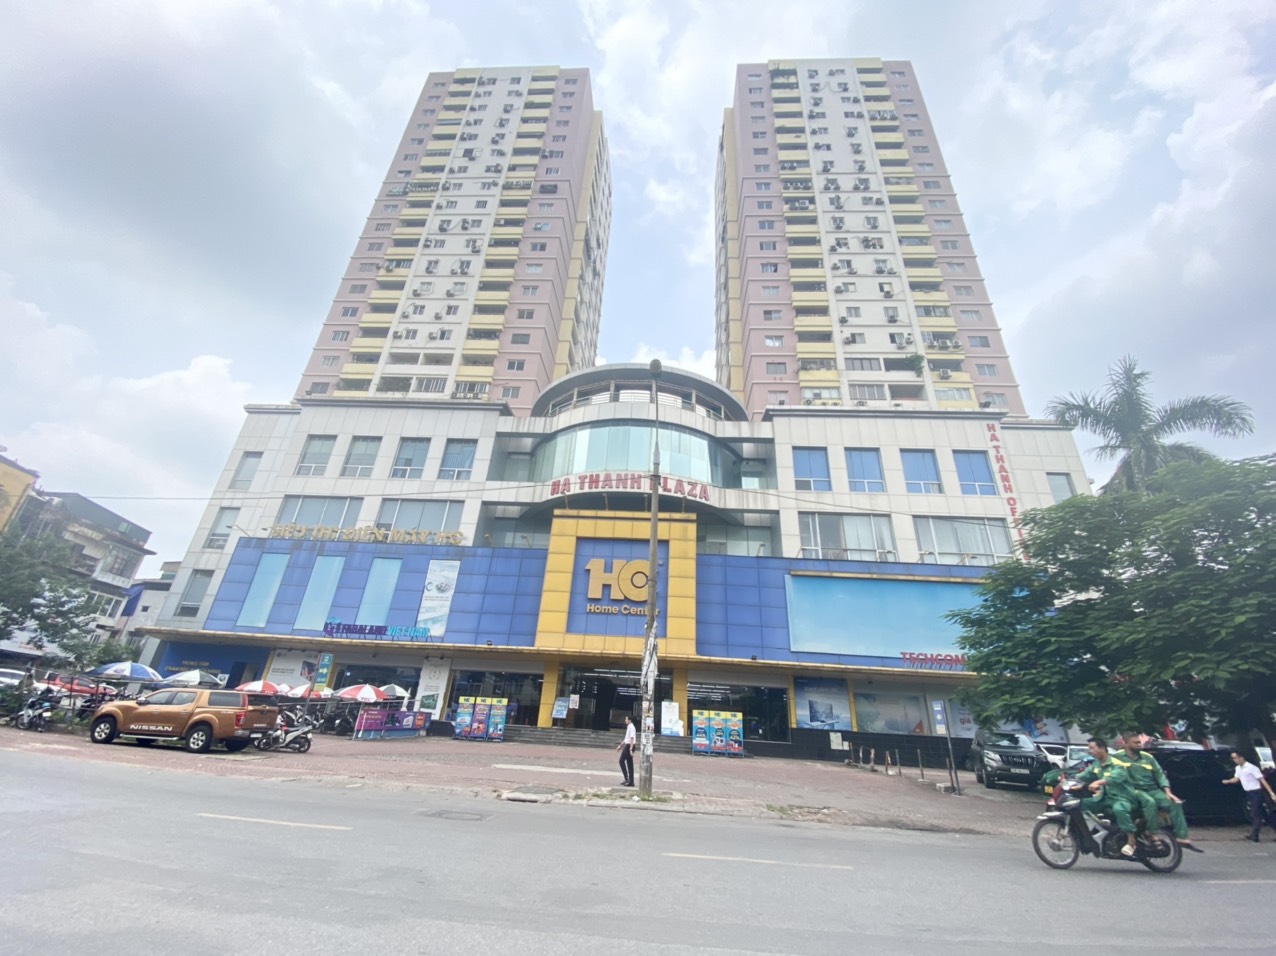 💥Bán gấp chung cư Hà Thành Plaza 102 Thái Thịnh 68m, 2PN, mặt phố tiện ích, 2.95 tỷ💥 13901601